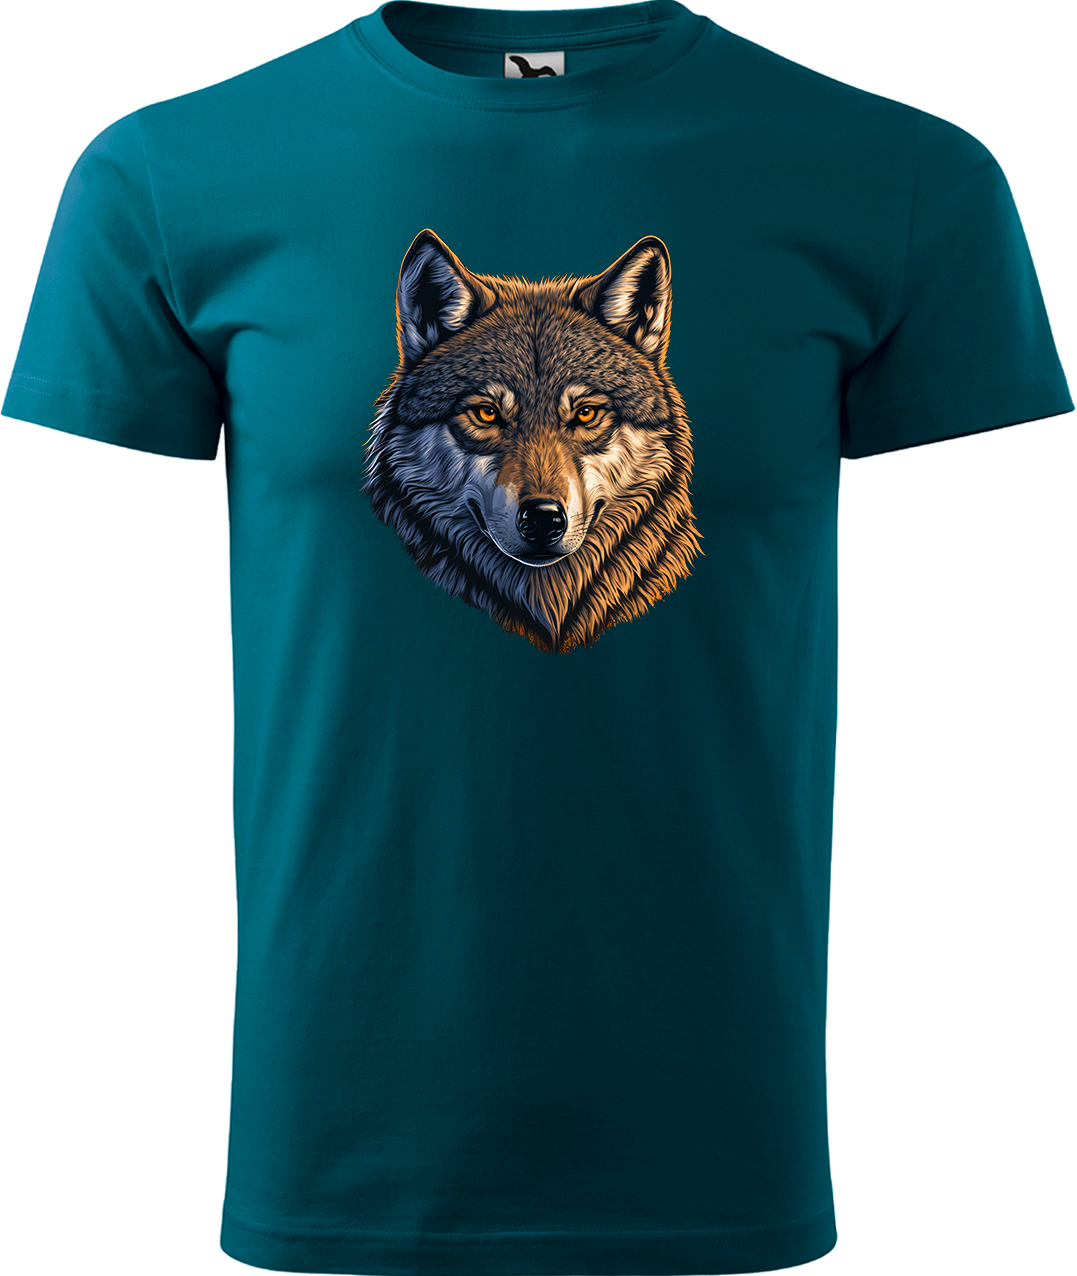 Pánské tričko s vlkem - Hlava vlka Velikost: XL, Barva: Petrolejová (93), Střih: pánský